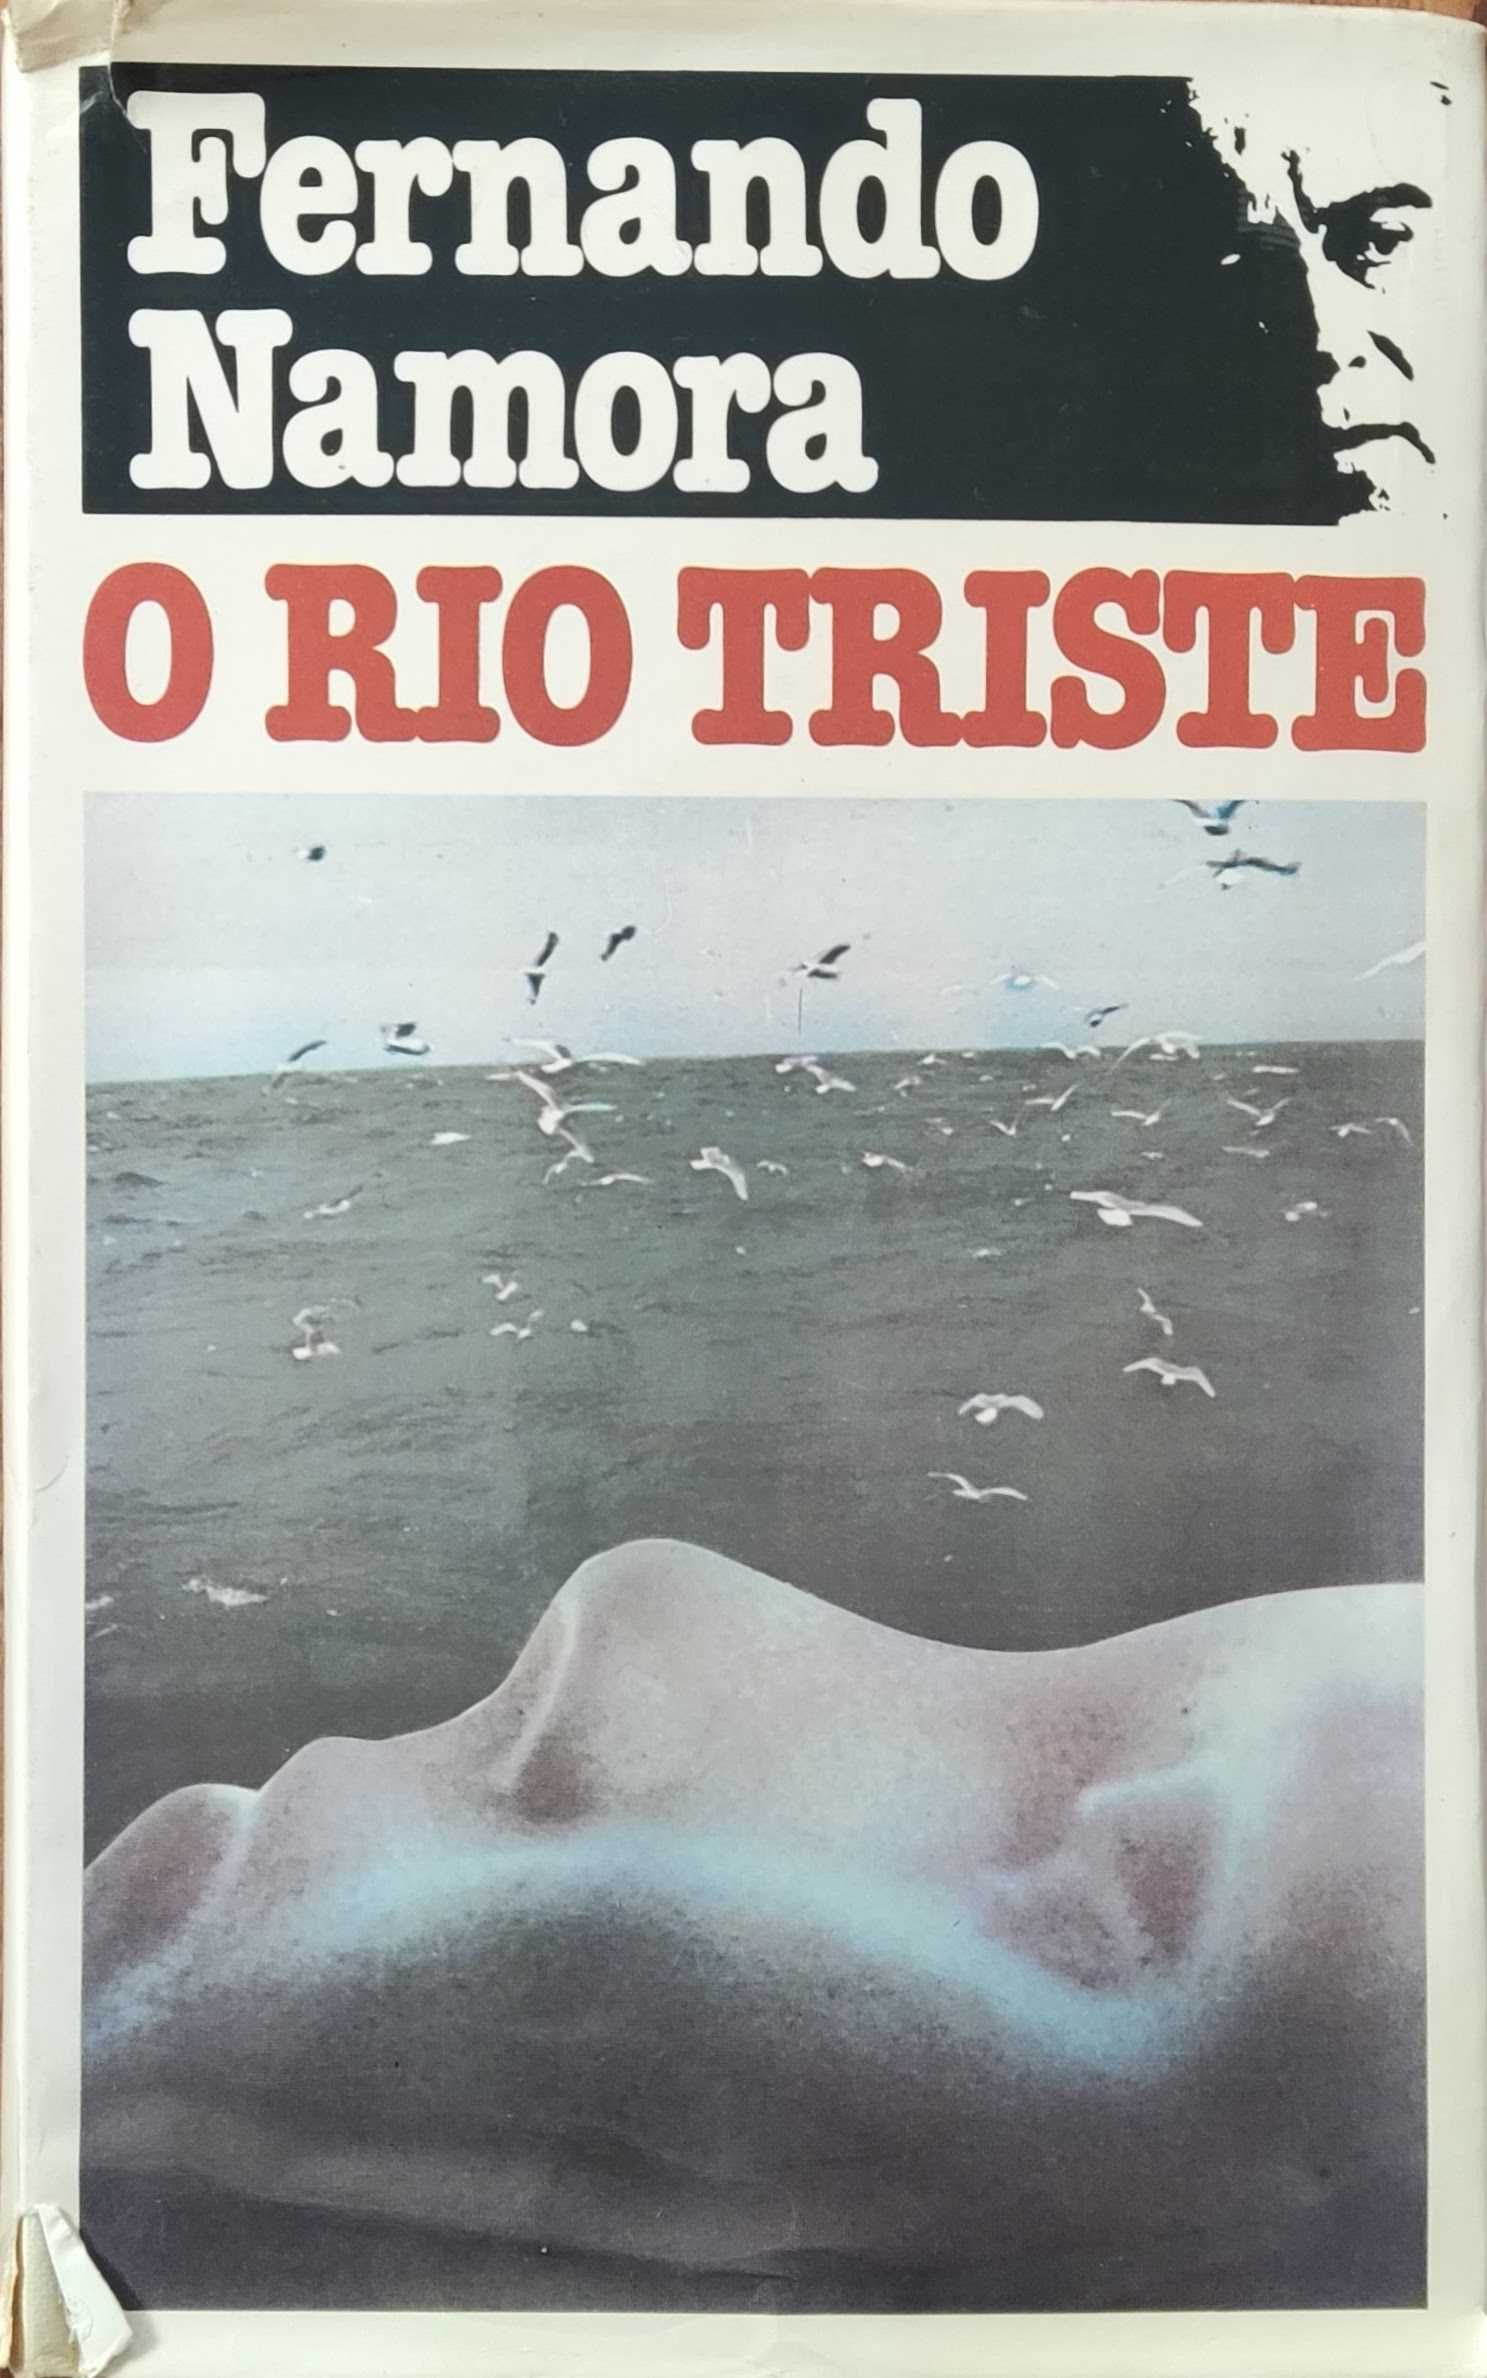 Livro "O Rio Triste" de Fernando Namora